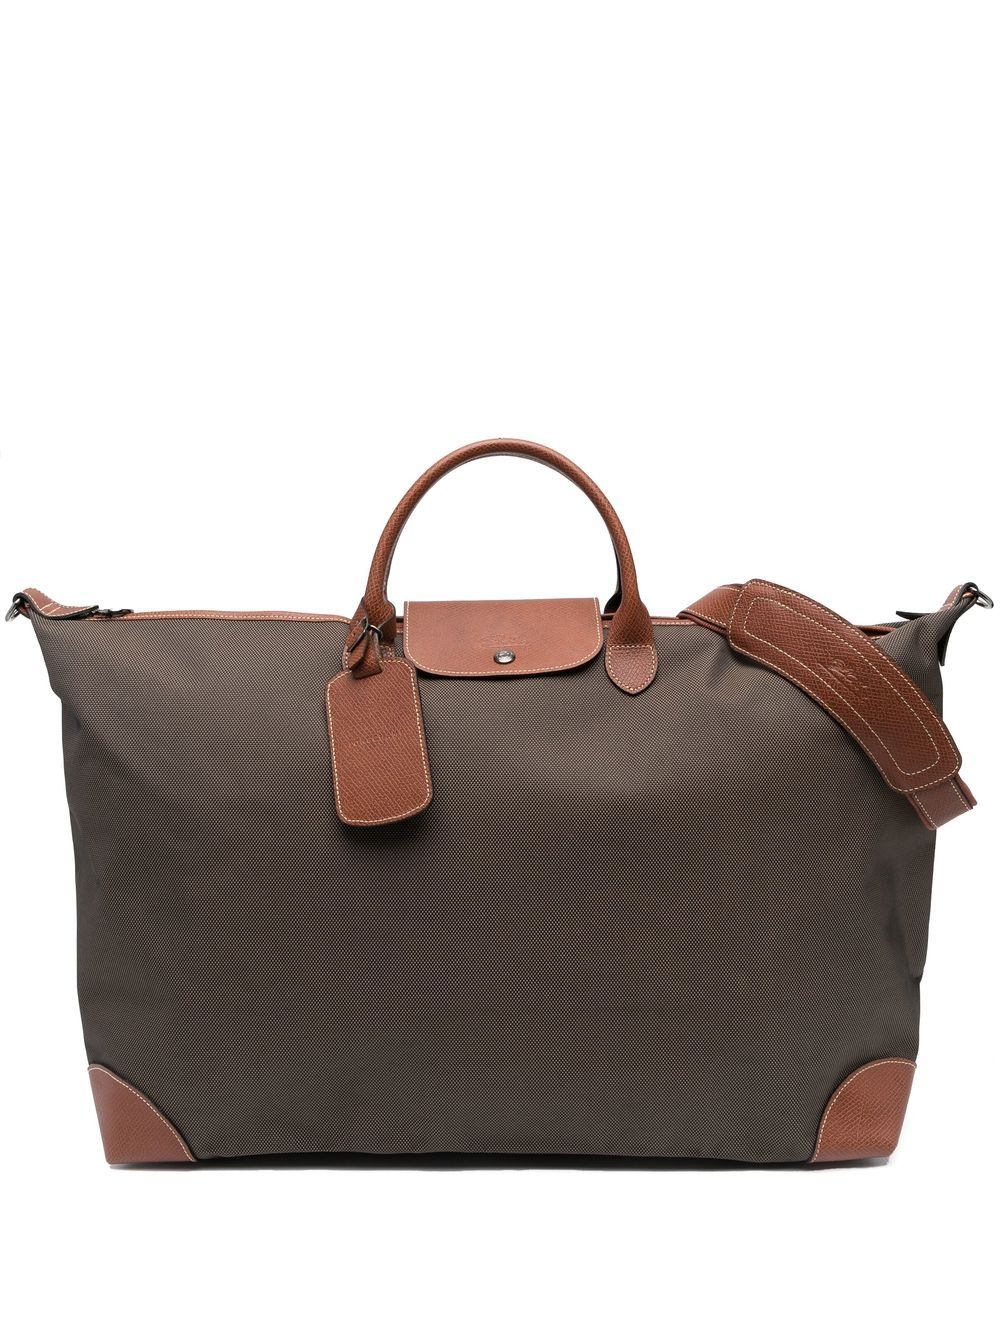 Longchamp medium Boxford travel bag - Brown